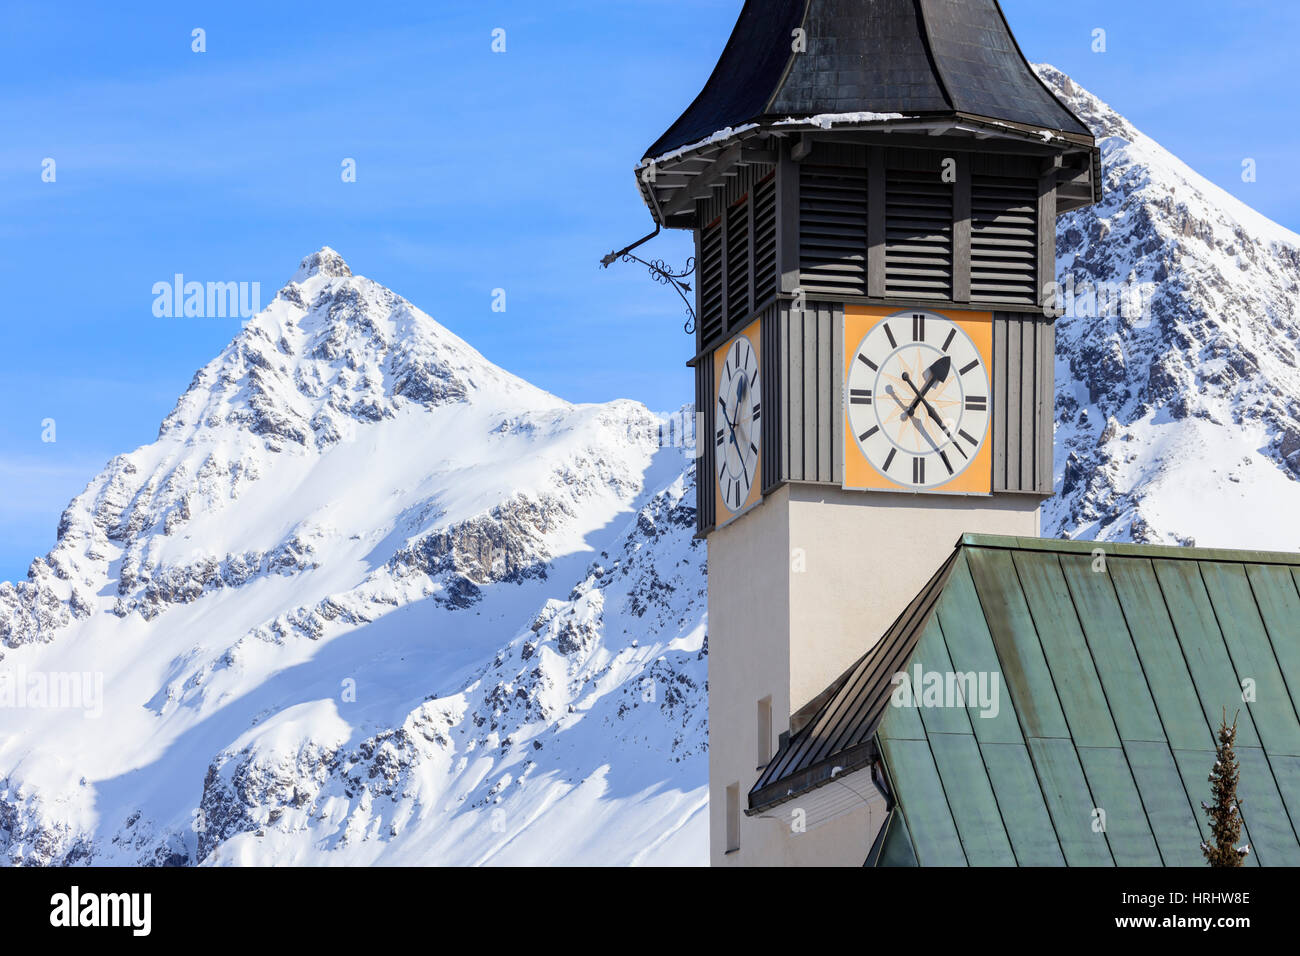 Le clocher typiquement alpin frames les cimes enneigées, Langwies, district de Plessur, Canton des Grisons, Suisse Banque D'Images